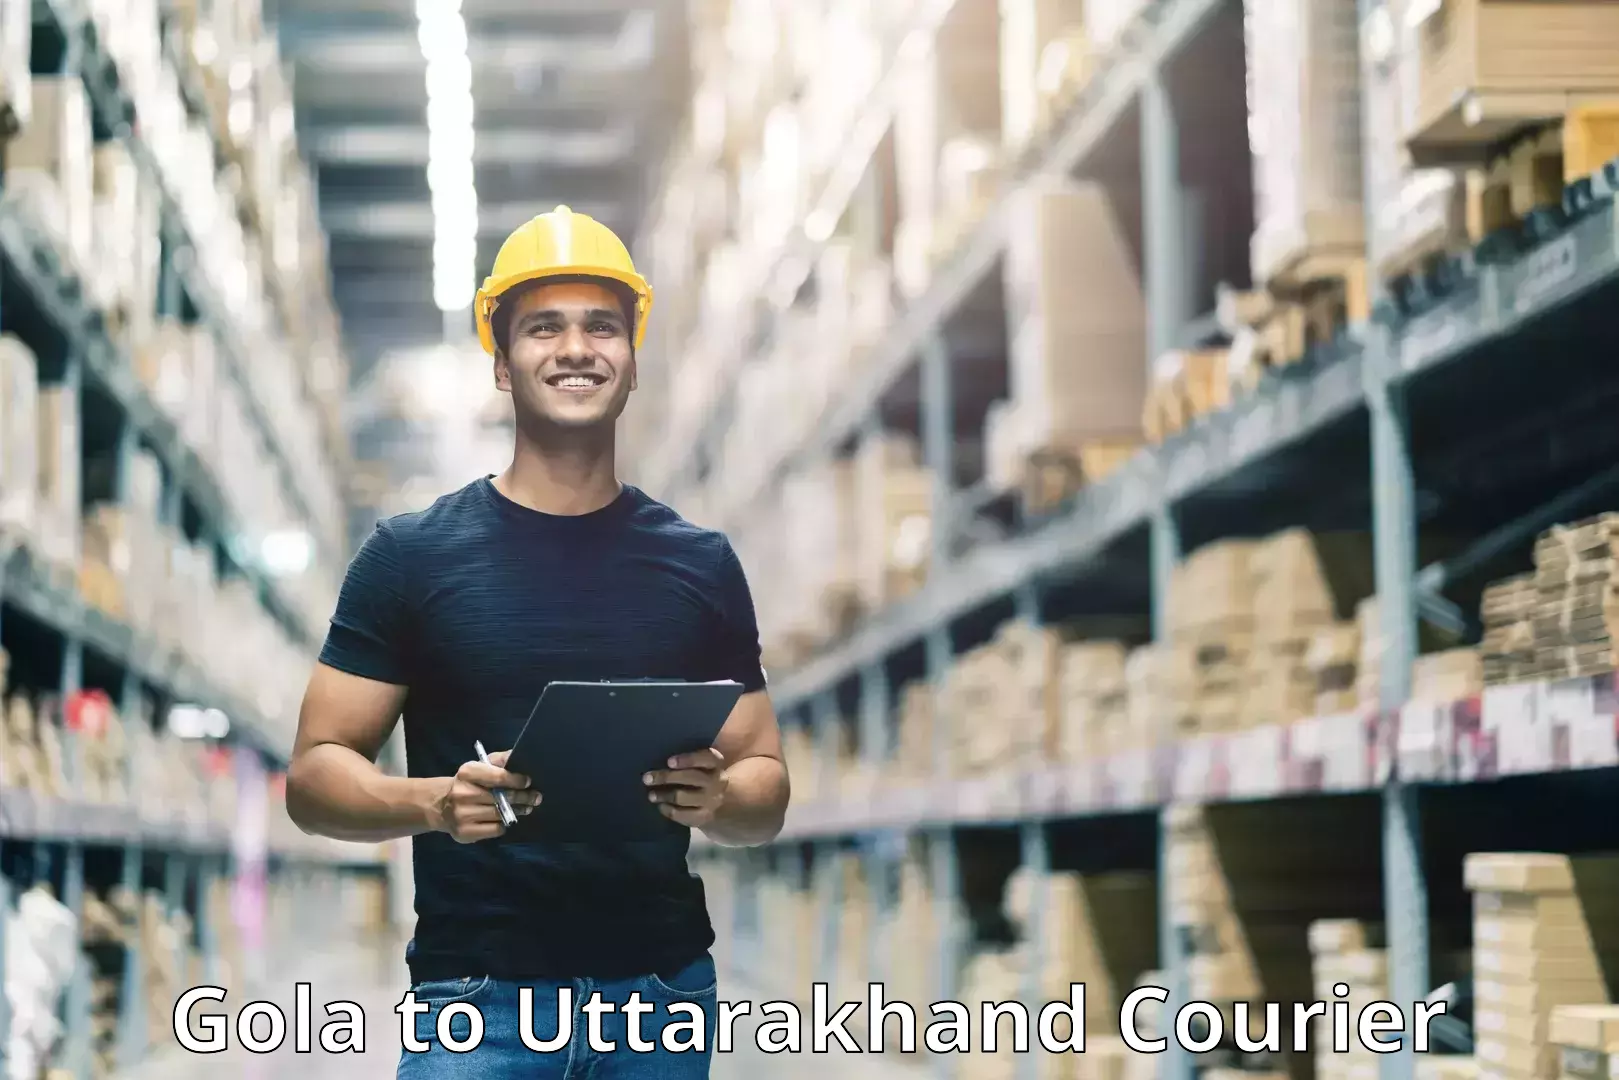 Efficient shipping operations Gola to Uttarakhand